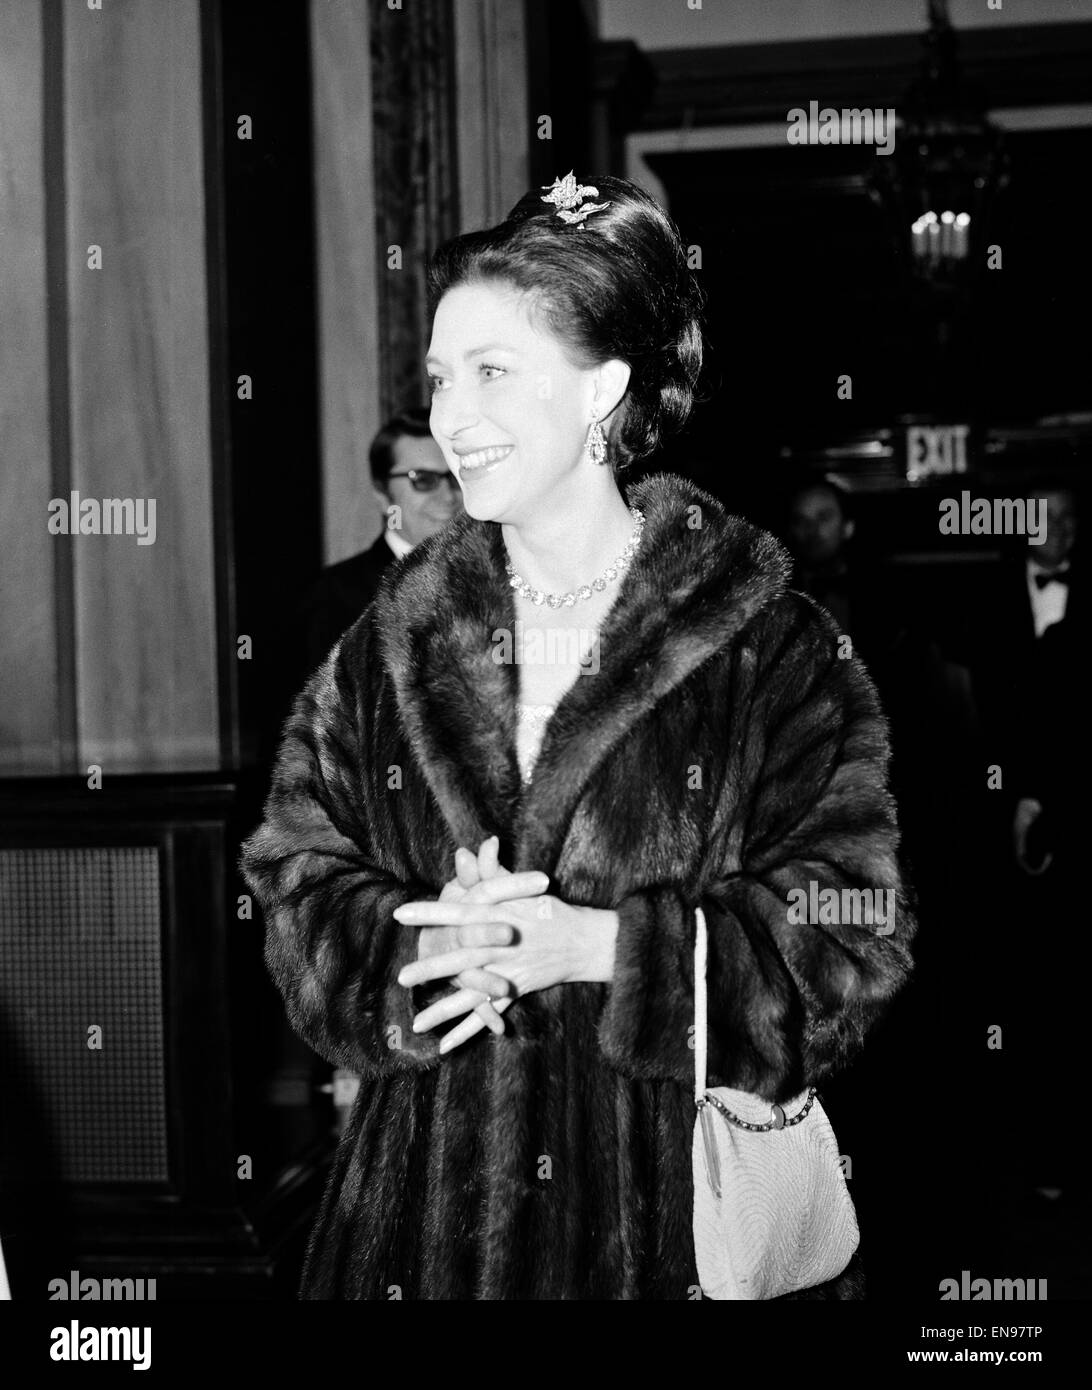 La princesse Margaret arrivant à la Royal Opera House pour voir un ballet premiere avec Margot Fonteyn et Rudolf Noureev. Elle a chuté en backstage lors de la tournée des Rolling Stones en 1976. 23 février 1967. Banque D'Images